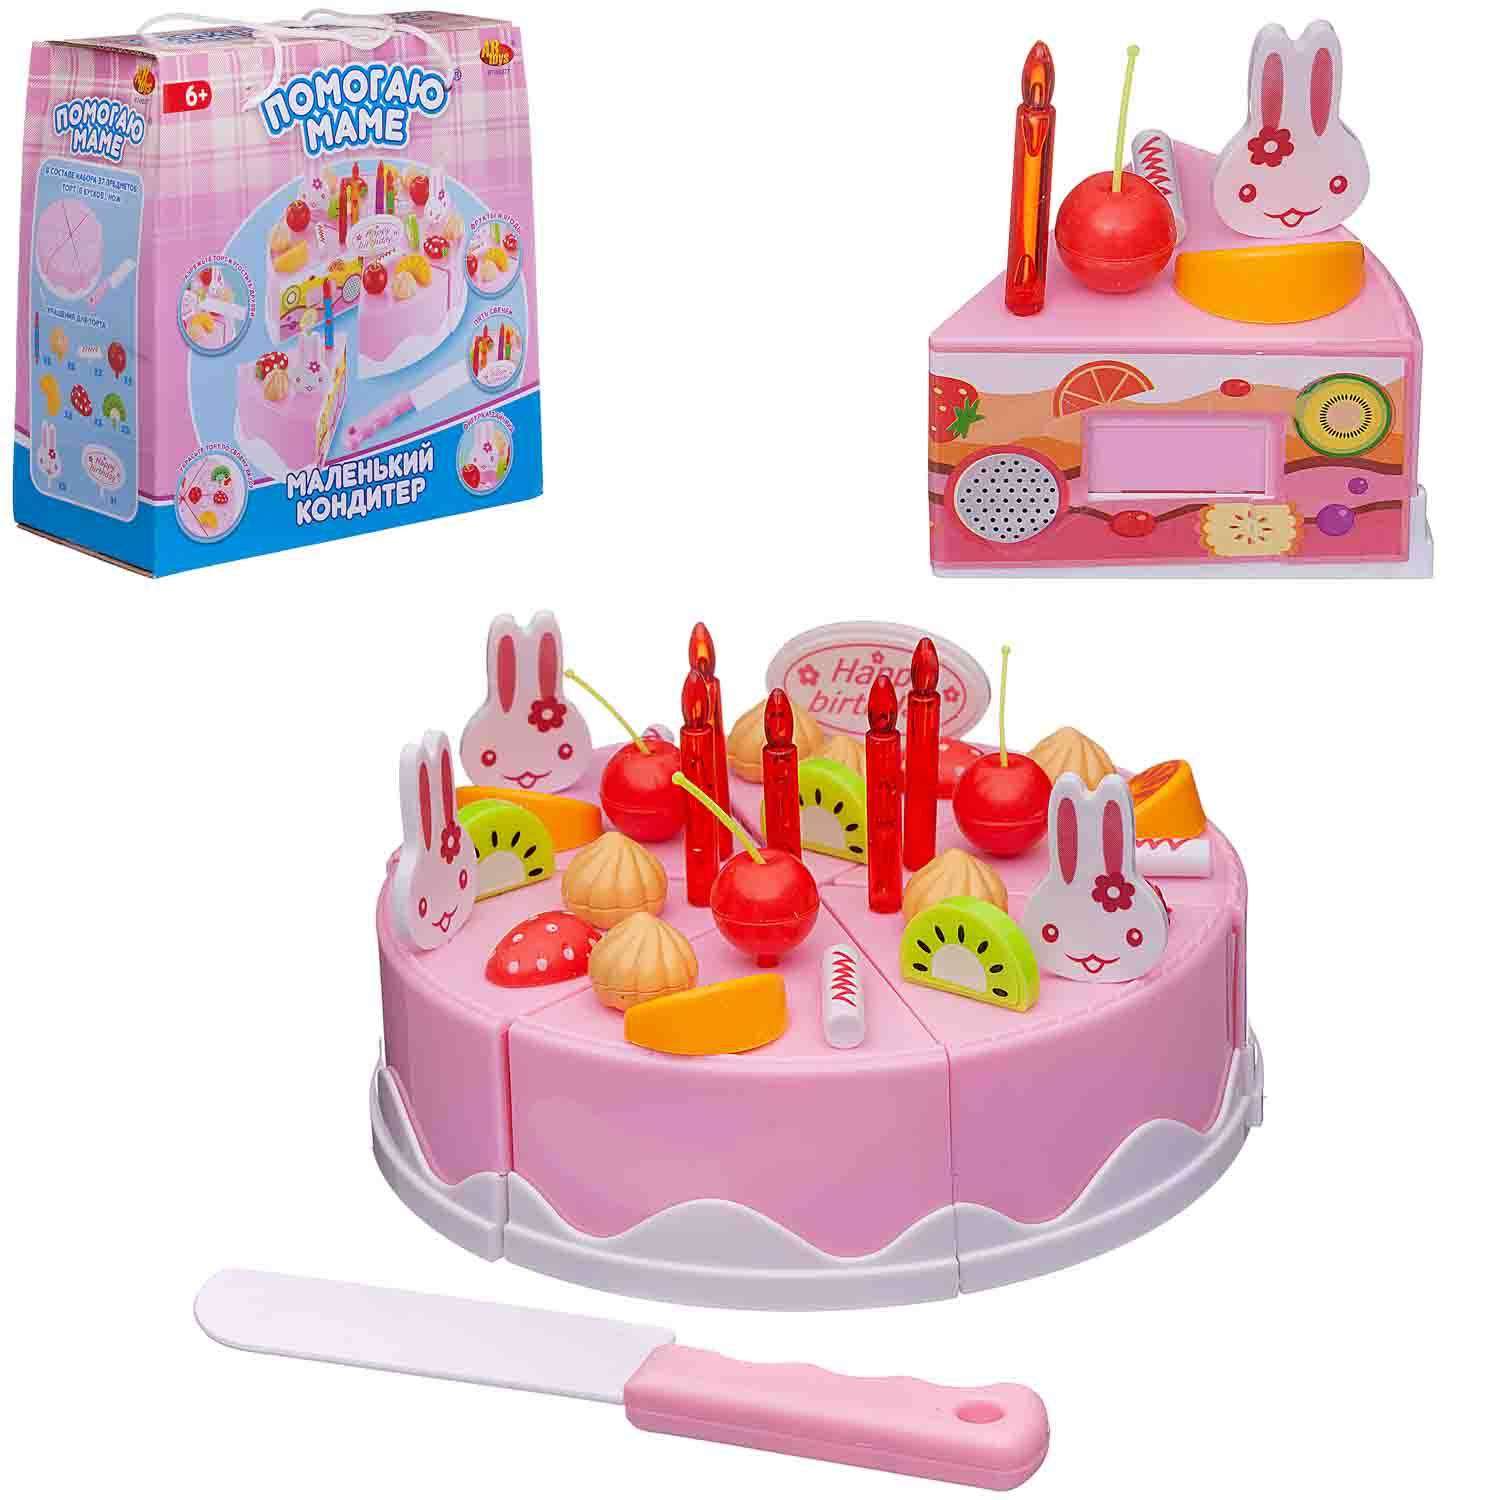 Игровой набор Помогаю маме ABTOYS торт клубничный розовый с аксессуарами 37 предметов - фото 2